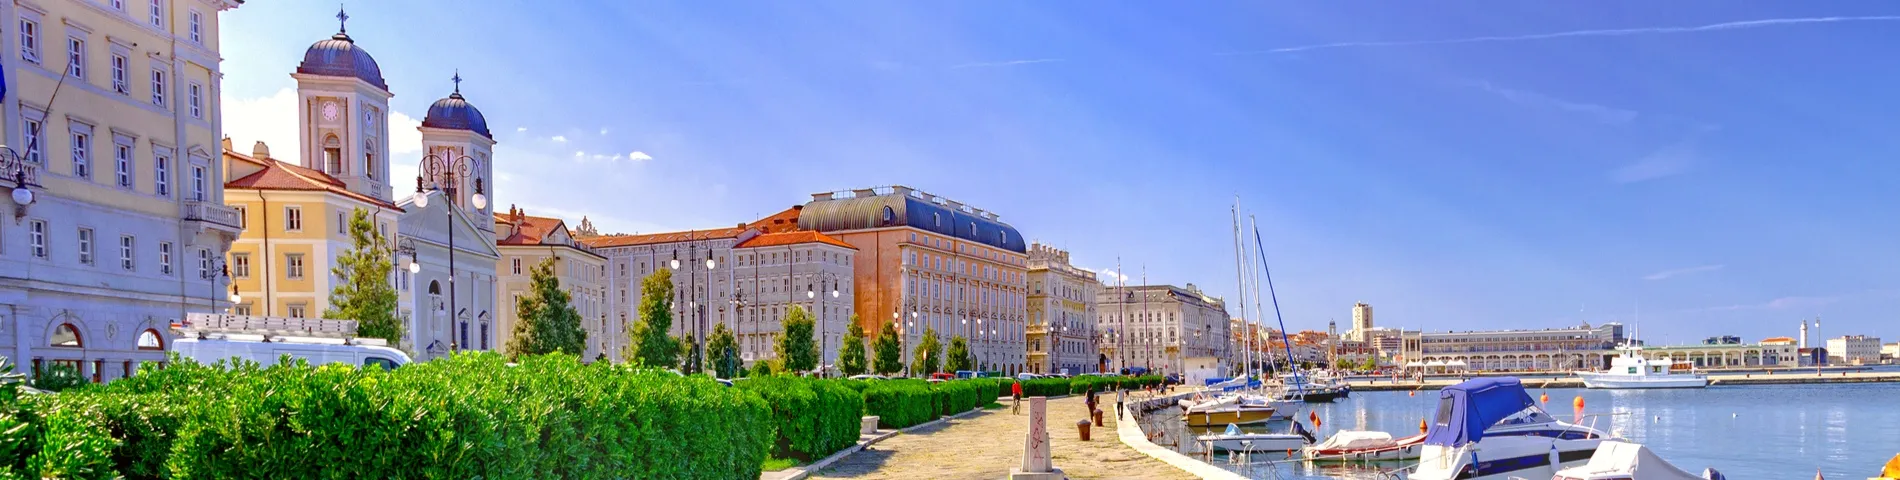 Trieste - General*